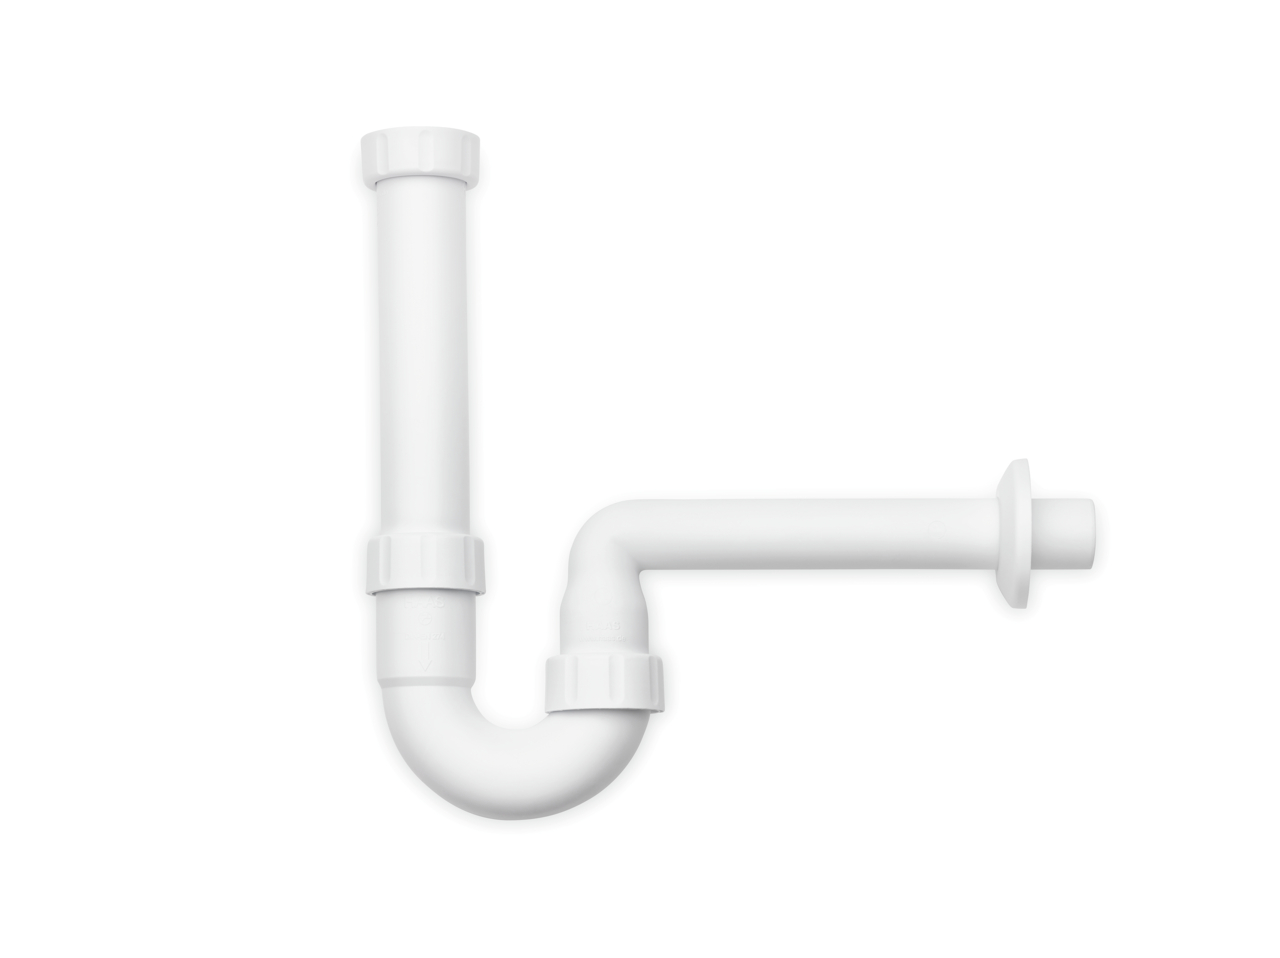  Siphon anti-odeur pour tuyaux salle de bain, blanc